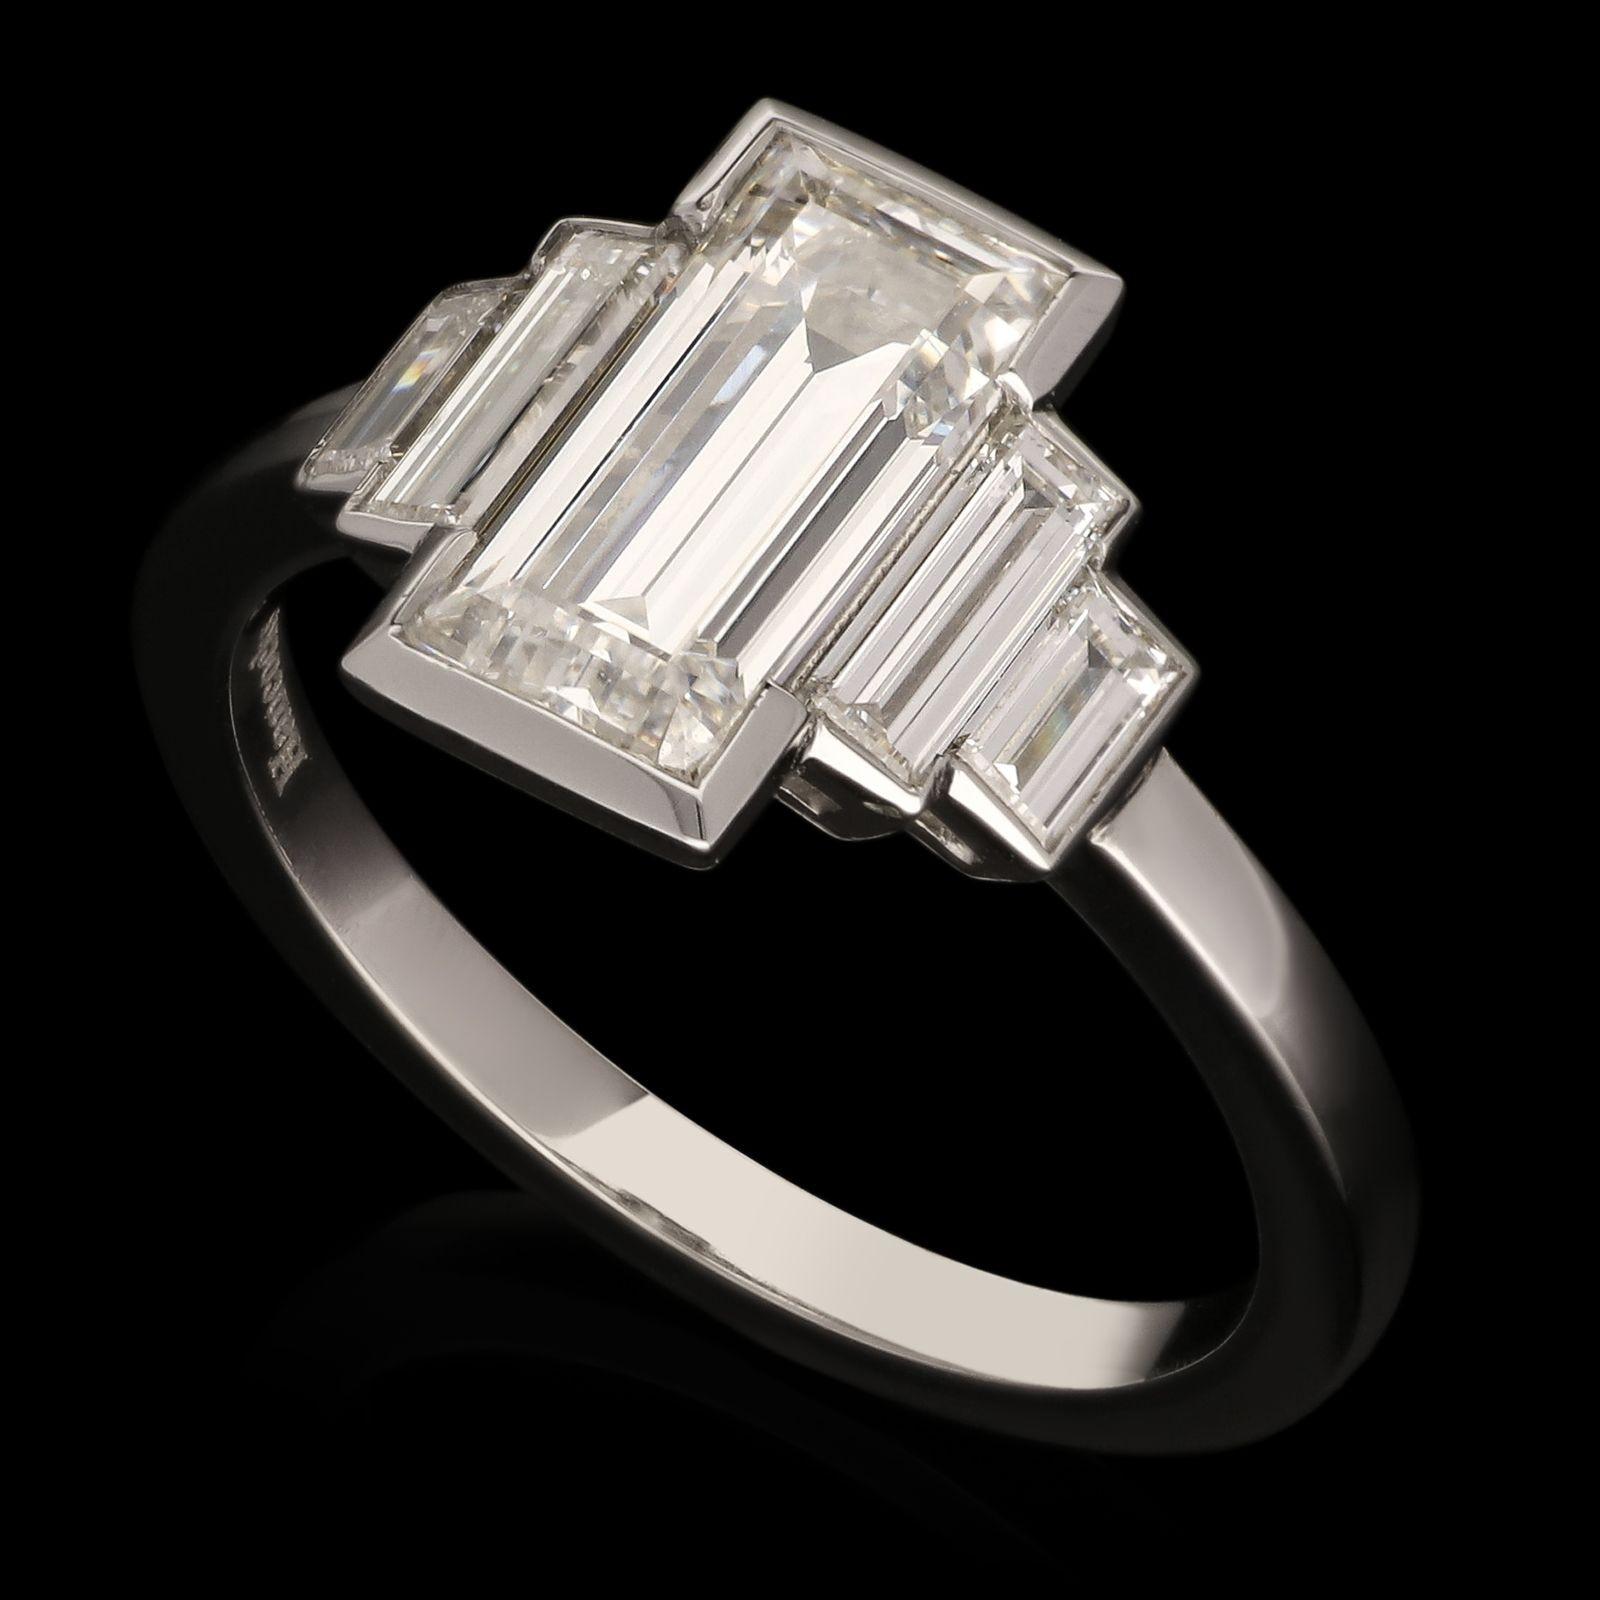 Ein atemberaubender Baguetteschliff-Diamantring von Hancocks, in dessen Mittelpunkt ein eleganter, länglicher Diamant im Smaragdschliff mit einem Gewicht von 1,54 ct. und einer Farbe von F und einer Reinheit von SI1 in einer teilweisen